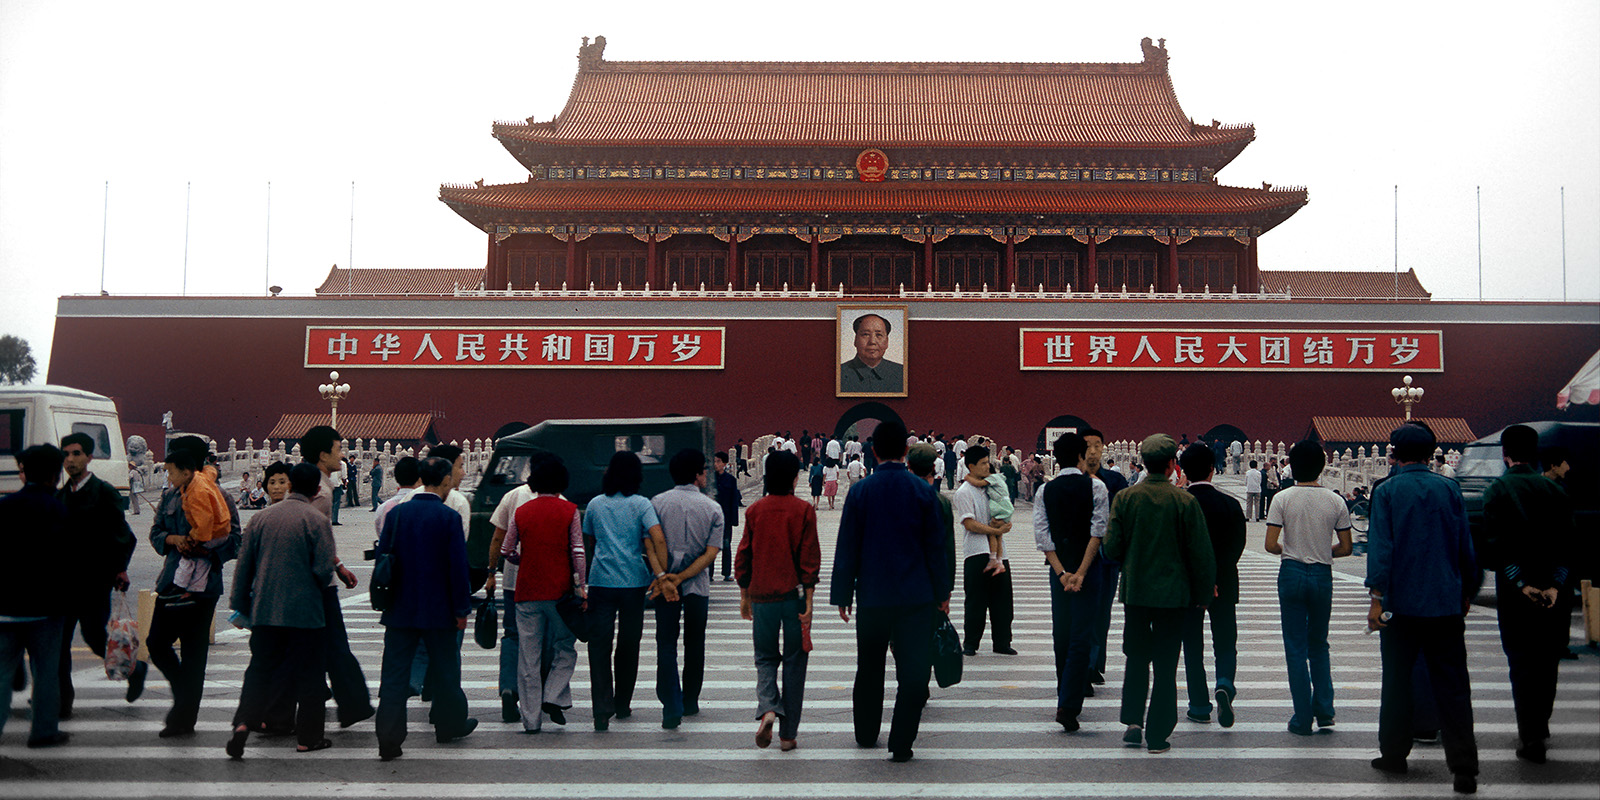 Place Tien An Men, devant la porte de la Paix Céleste - Pékin - Chine, 1984